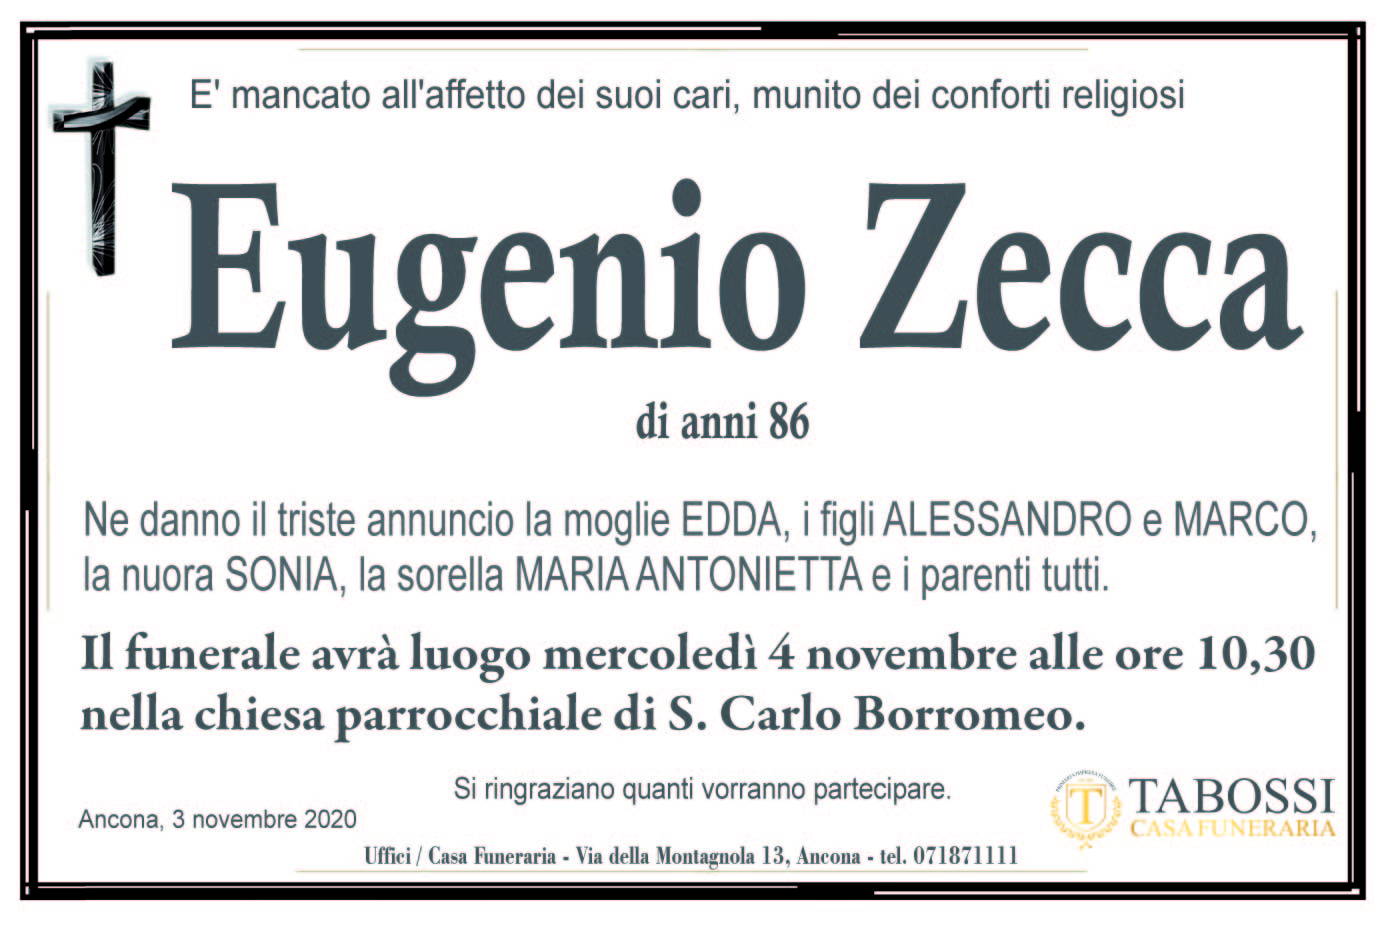 Eugenio Zecca